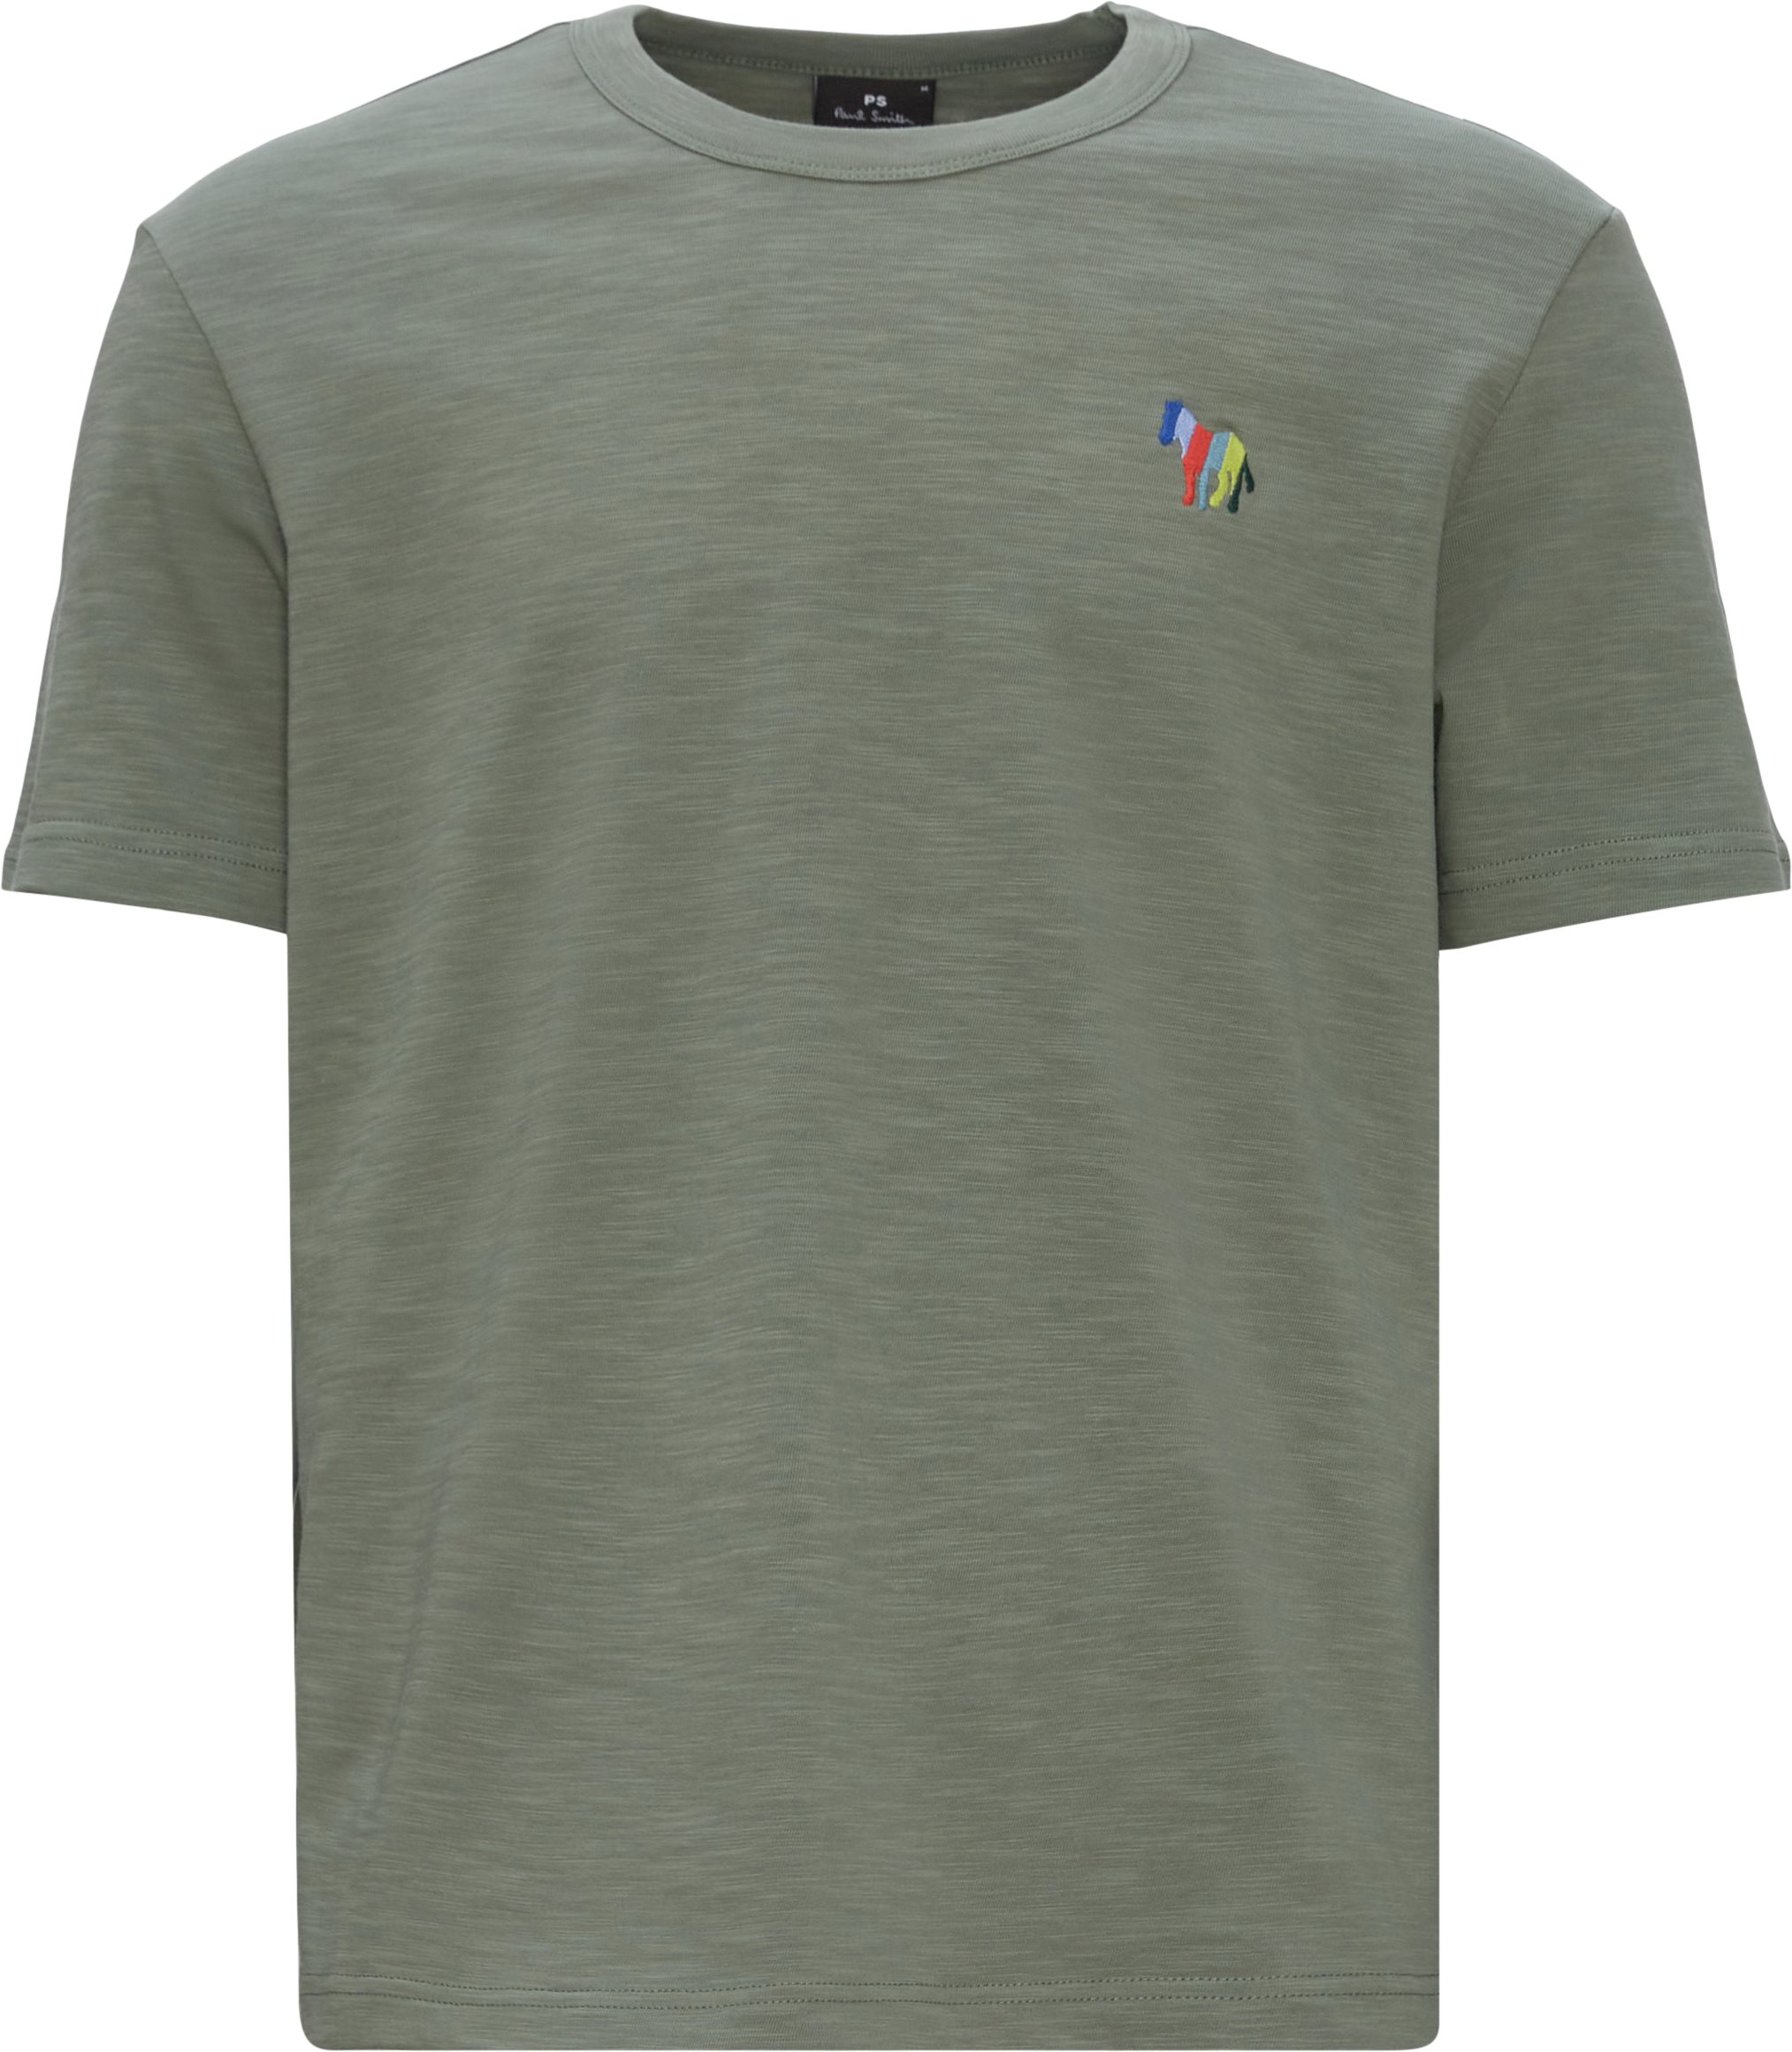 Zebra Emb Tee - T-shirts - Regular fit - Army